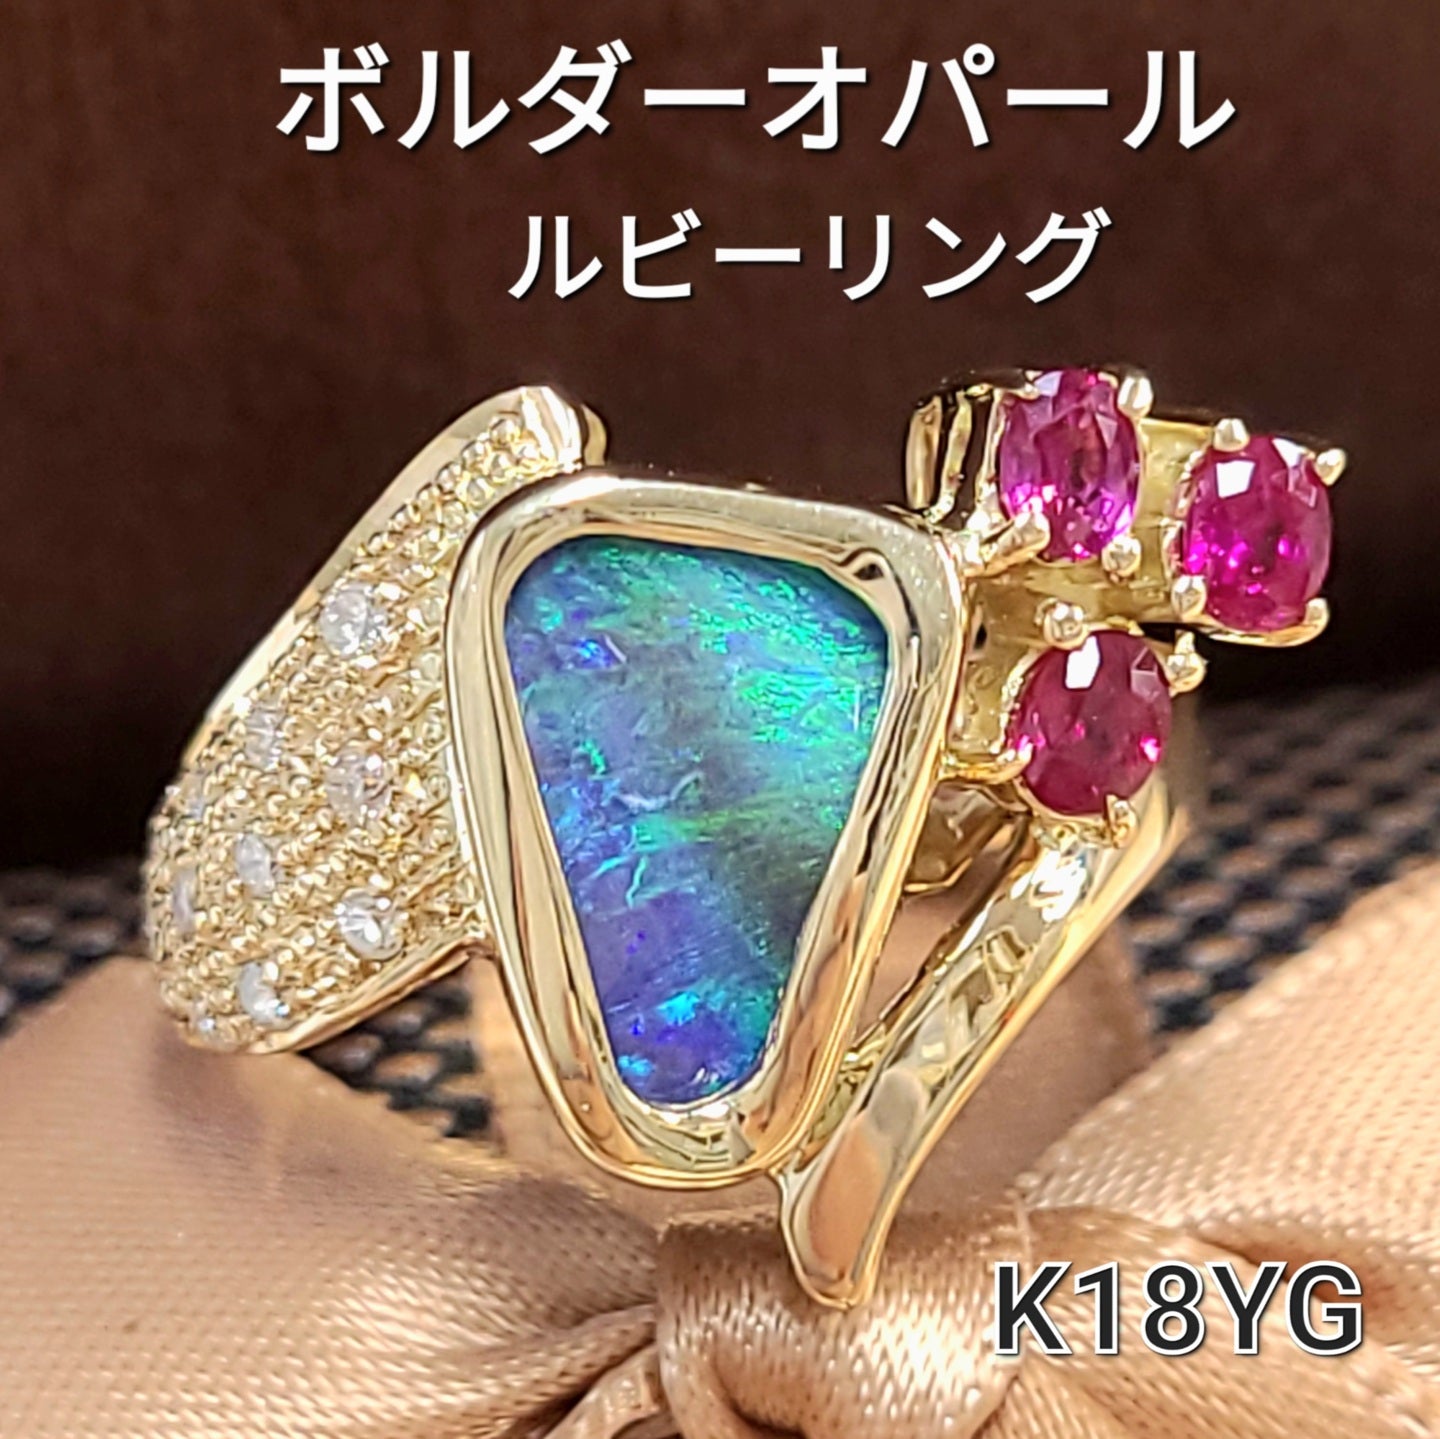 ボルダーオパール ルビー ダイヤモンド K18 イエローゴールド 18金 リング 指輪 10月誕生石 【鑑別書付】